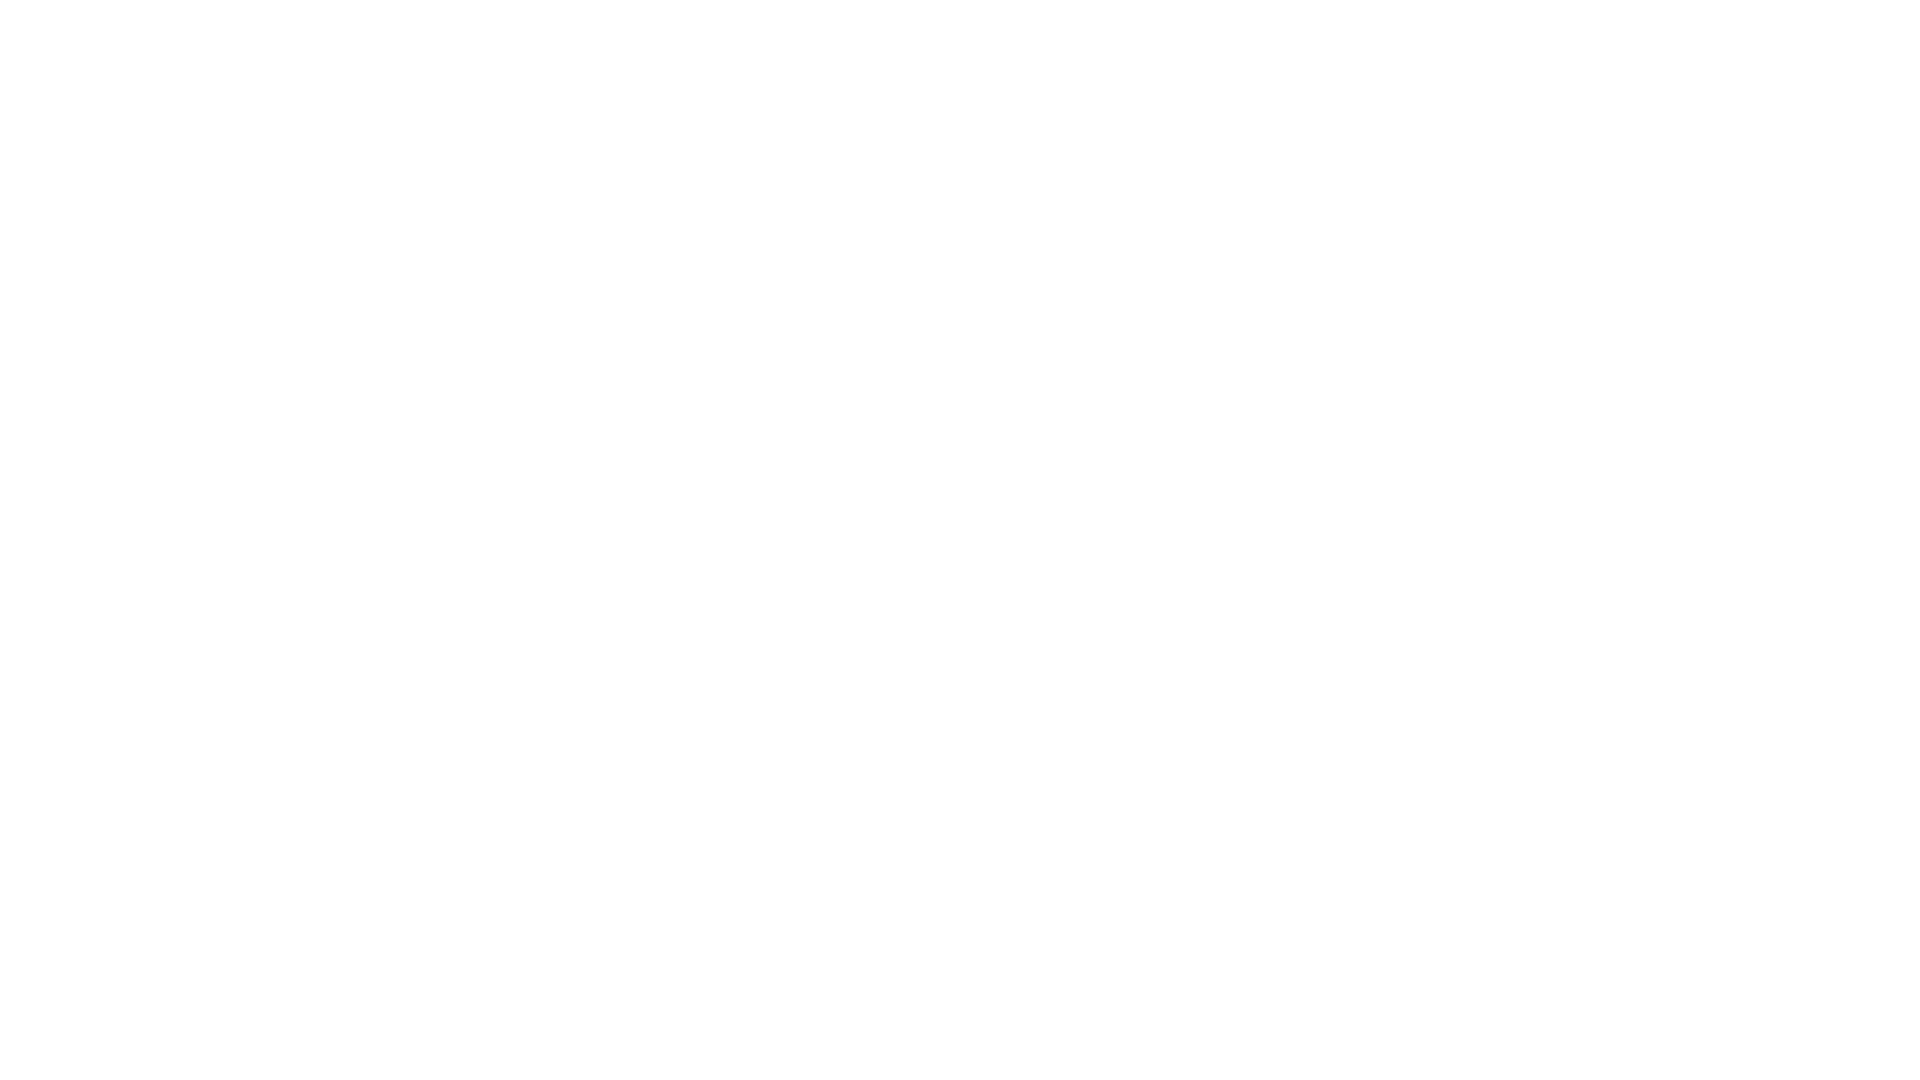 Logoen til viken kommunikasjon i hvitt, 3 overlappende skiver med gradient med en K i midten der det går en strek gjennom K-en som blir til en V, med Viken Kommunikasjon skrevet på siden